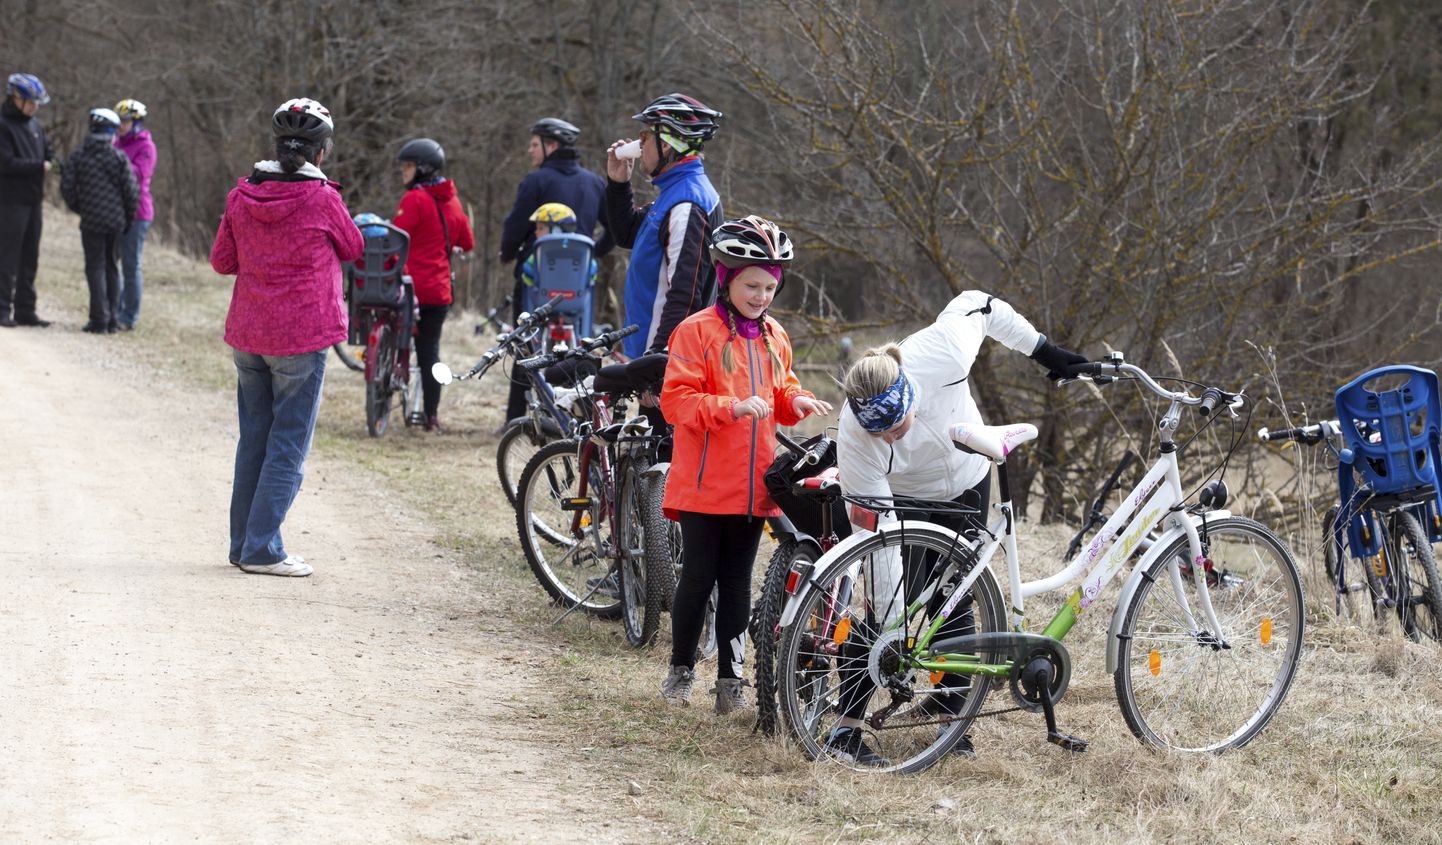 Pühapäeva ennelõunal oli Varesemägedesse viiv tee jalgrattureid täis, sest sinna läks aasta esimene rattamatk.